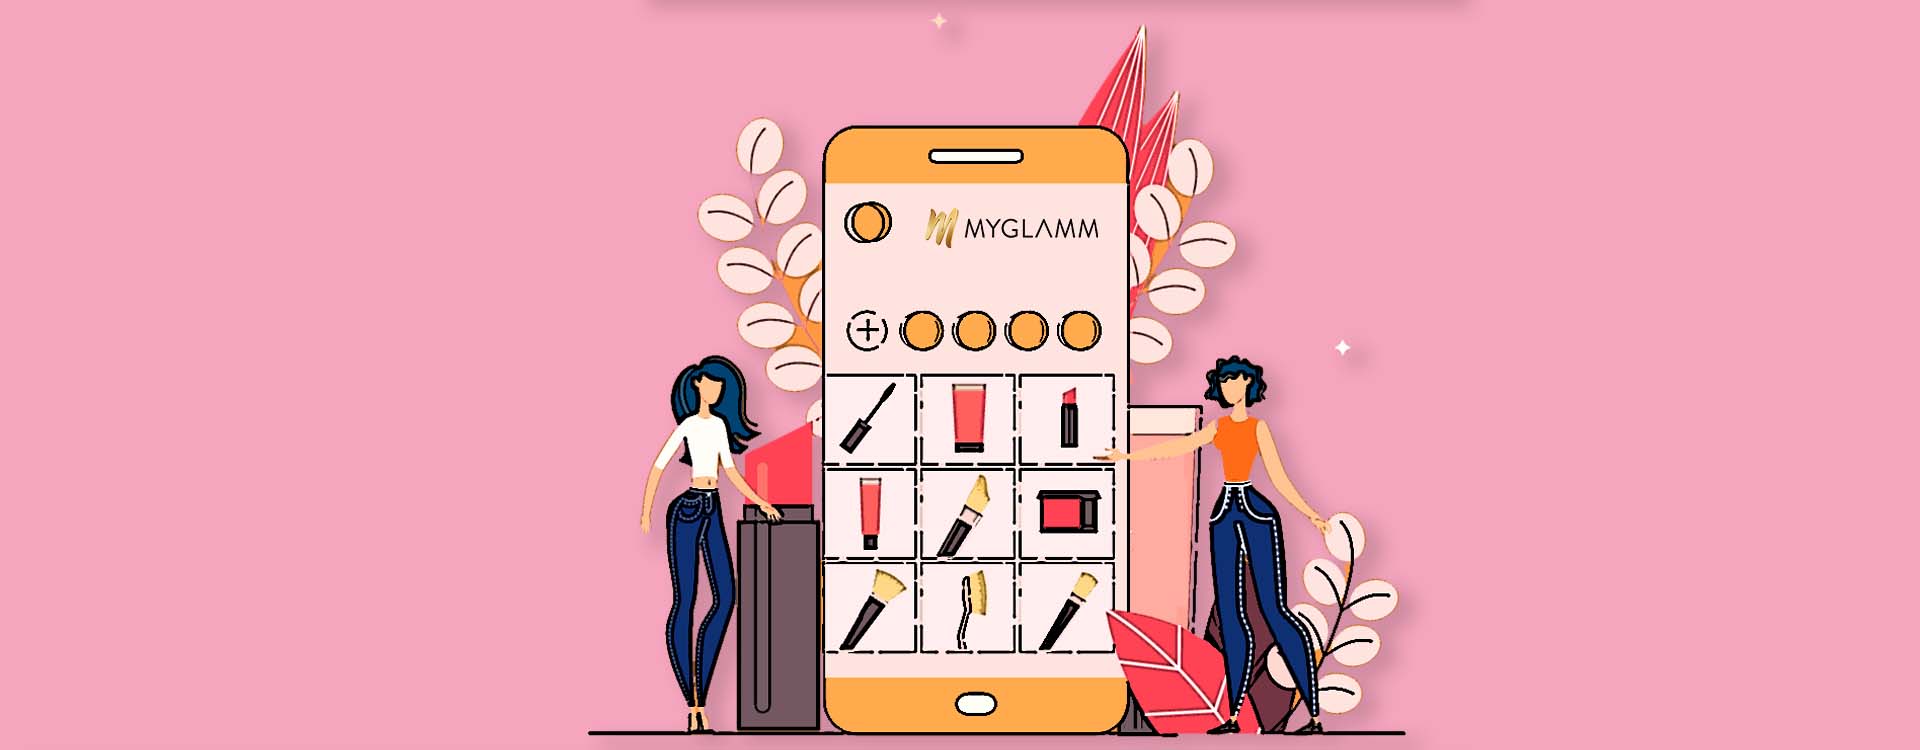 MyGlamm D2C Fashion Shop Online India